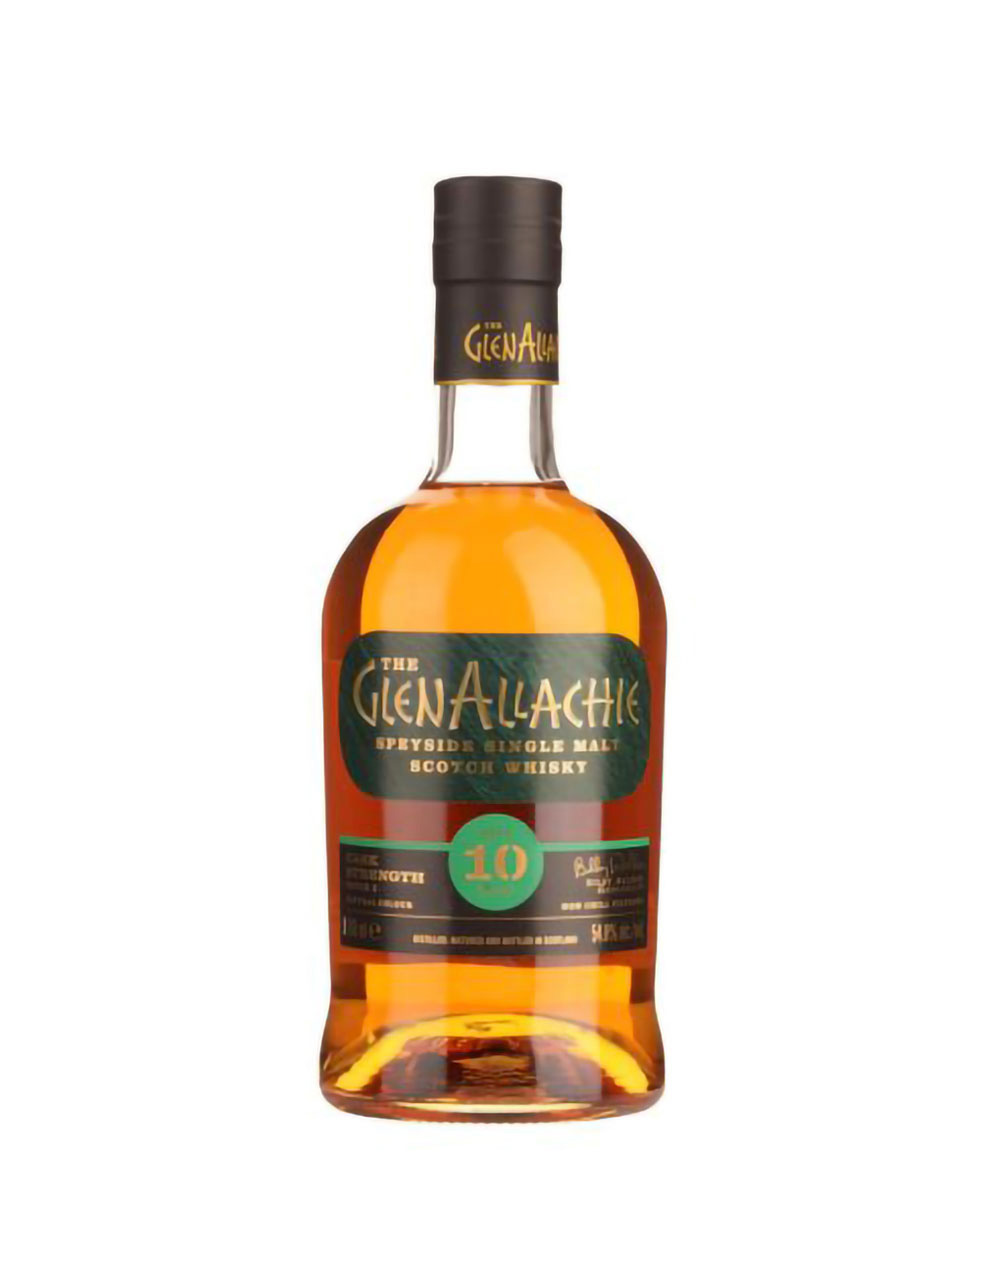 The GlenAllachie 10 Year Old Cask Strength Batch 1 Single Malt Scotch Whisky